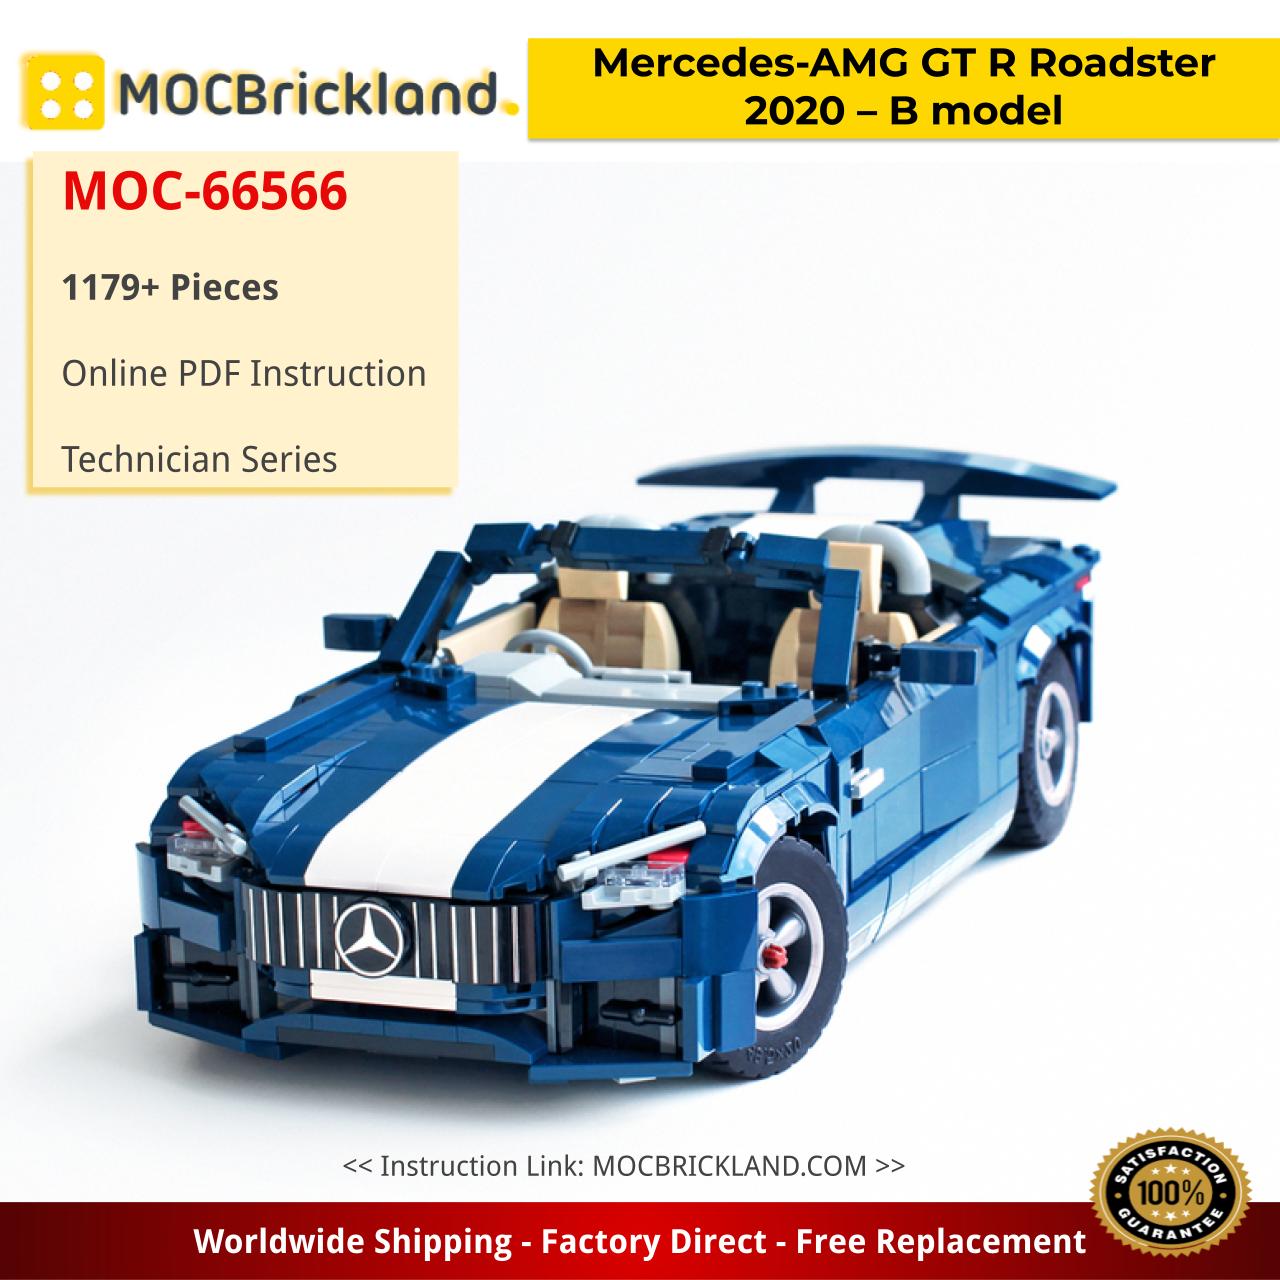 MOCBRICKLAND MOC-66566 Mercedes-AMG GT R Roadster 2020 – B model